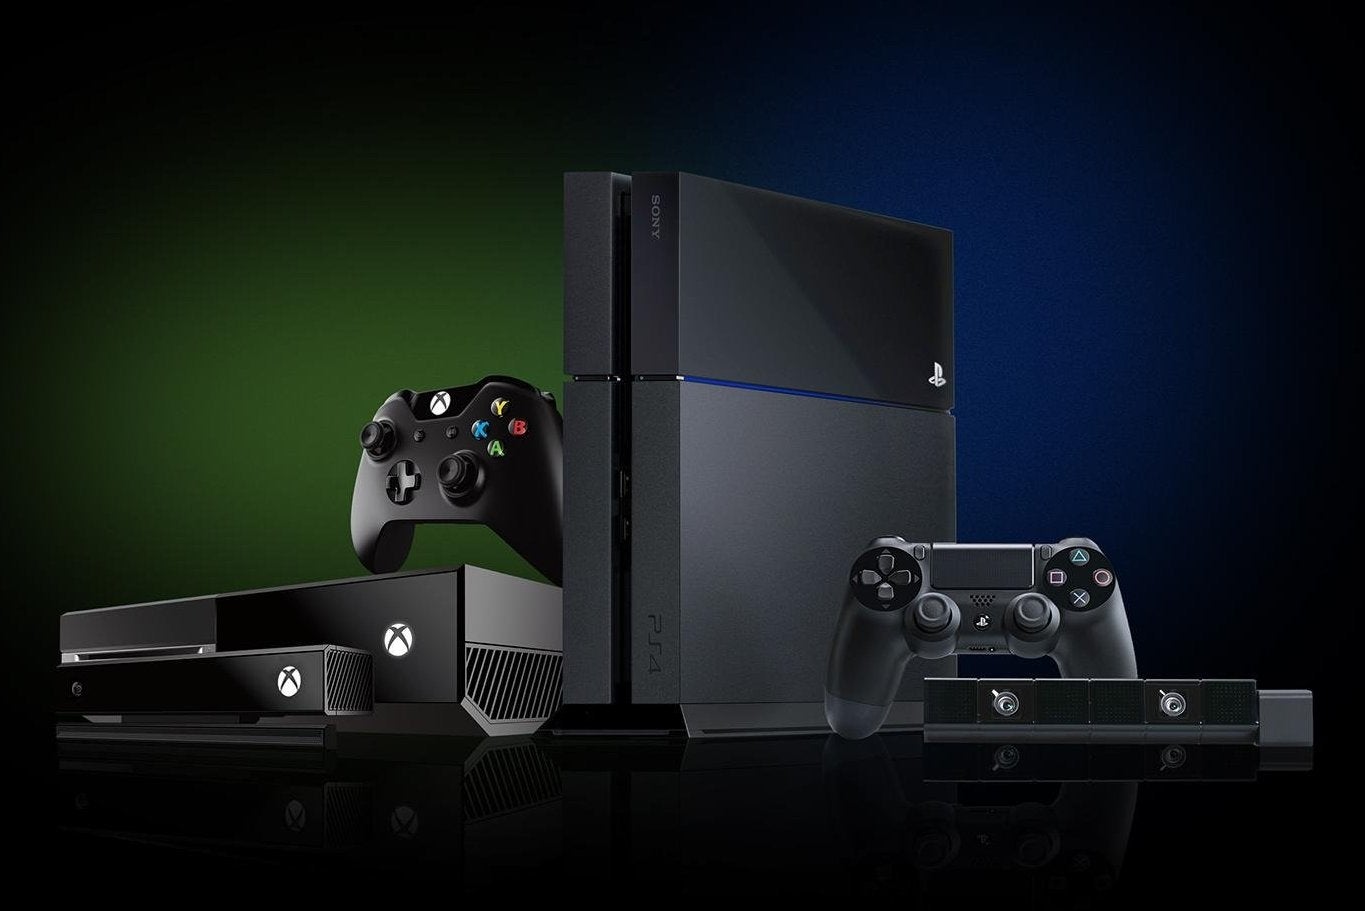 Immagine di Vendite US: PS4 supera ancora Xbox One nel mese di ottobre